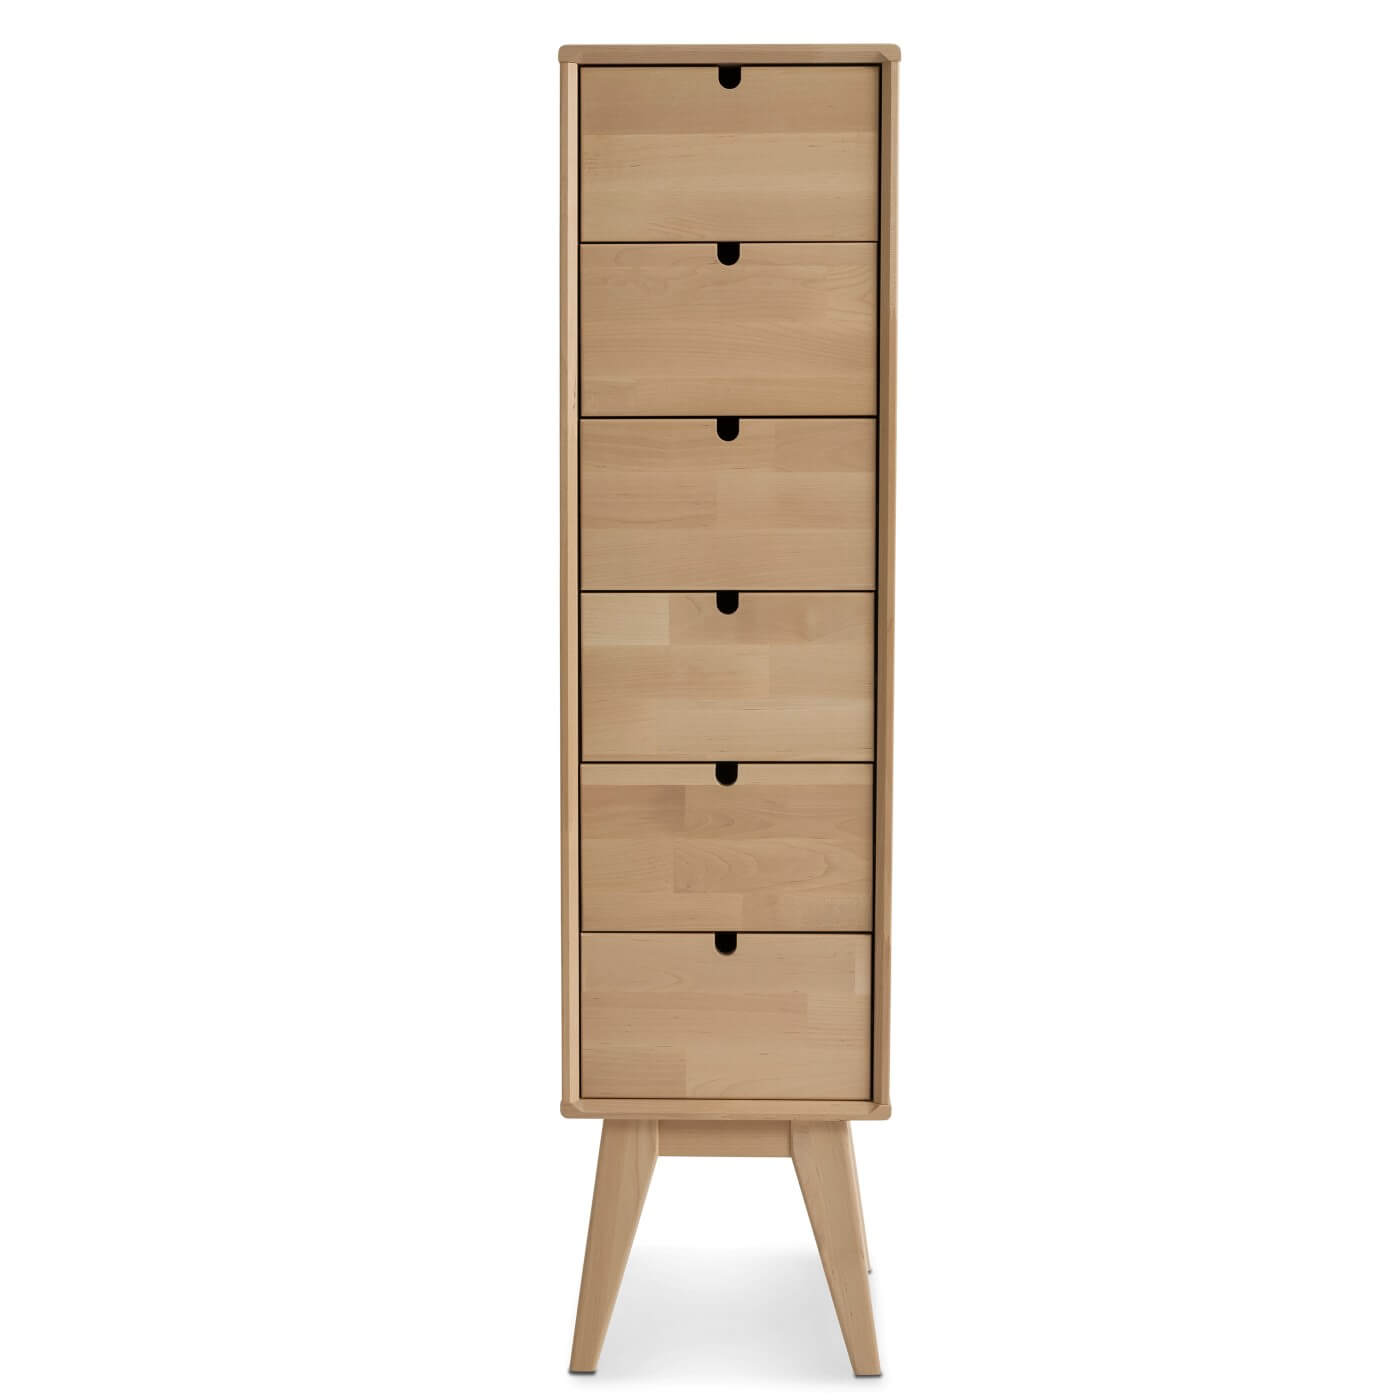 Wąska komoda z szufladami NOTTE 30 cm, drewniana wysoka z 6 szufladami, na wysokich nóżkach. Nowoczesny skandynawski design